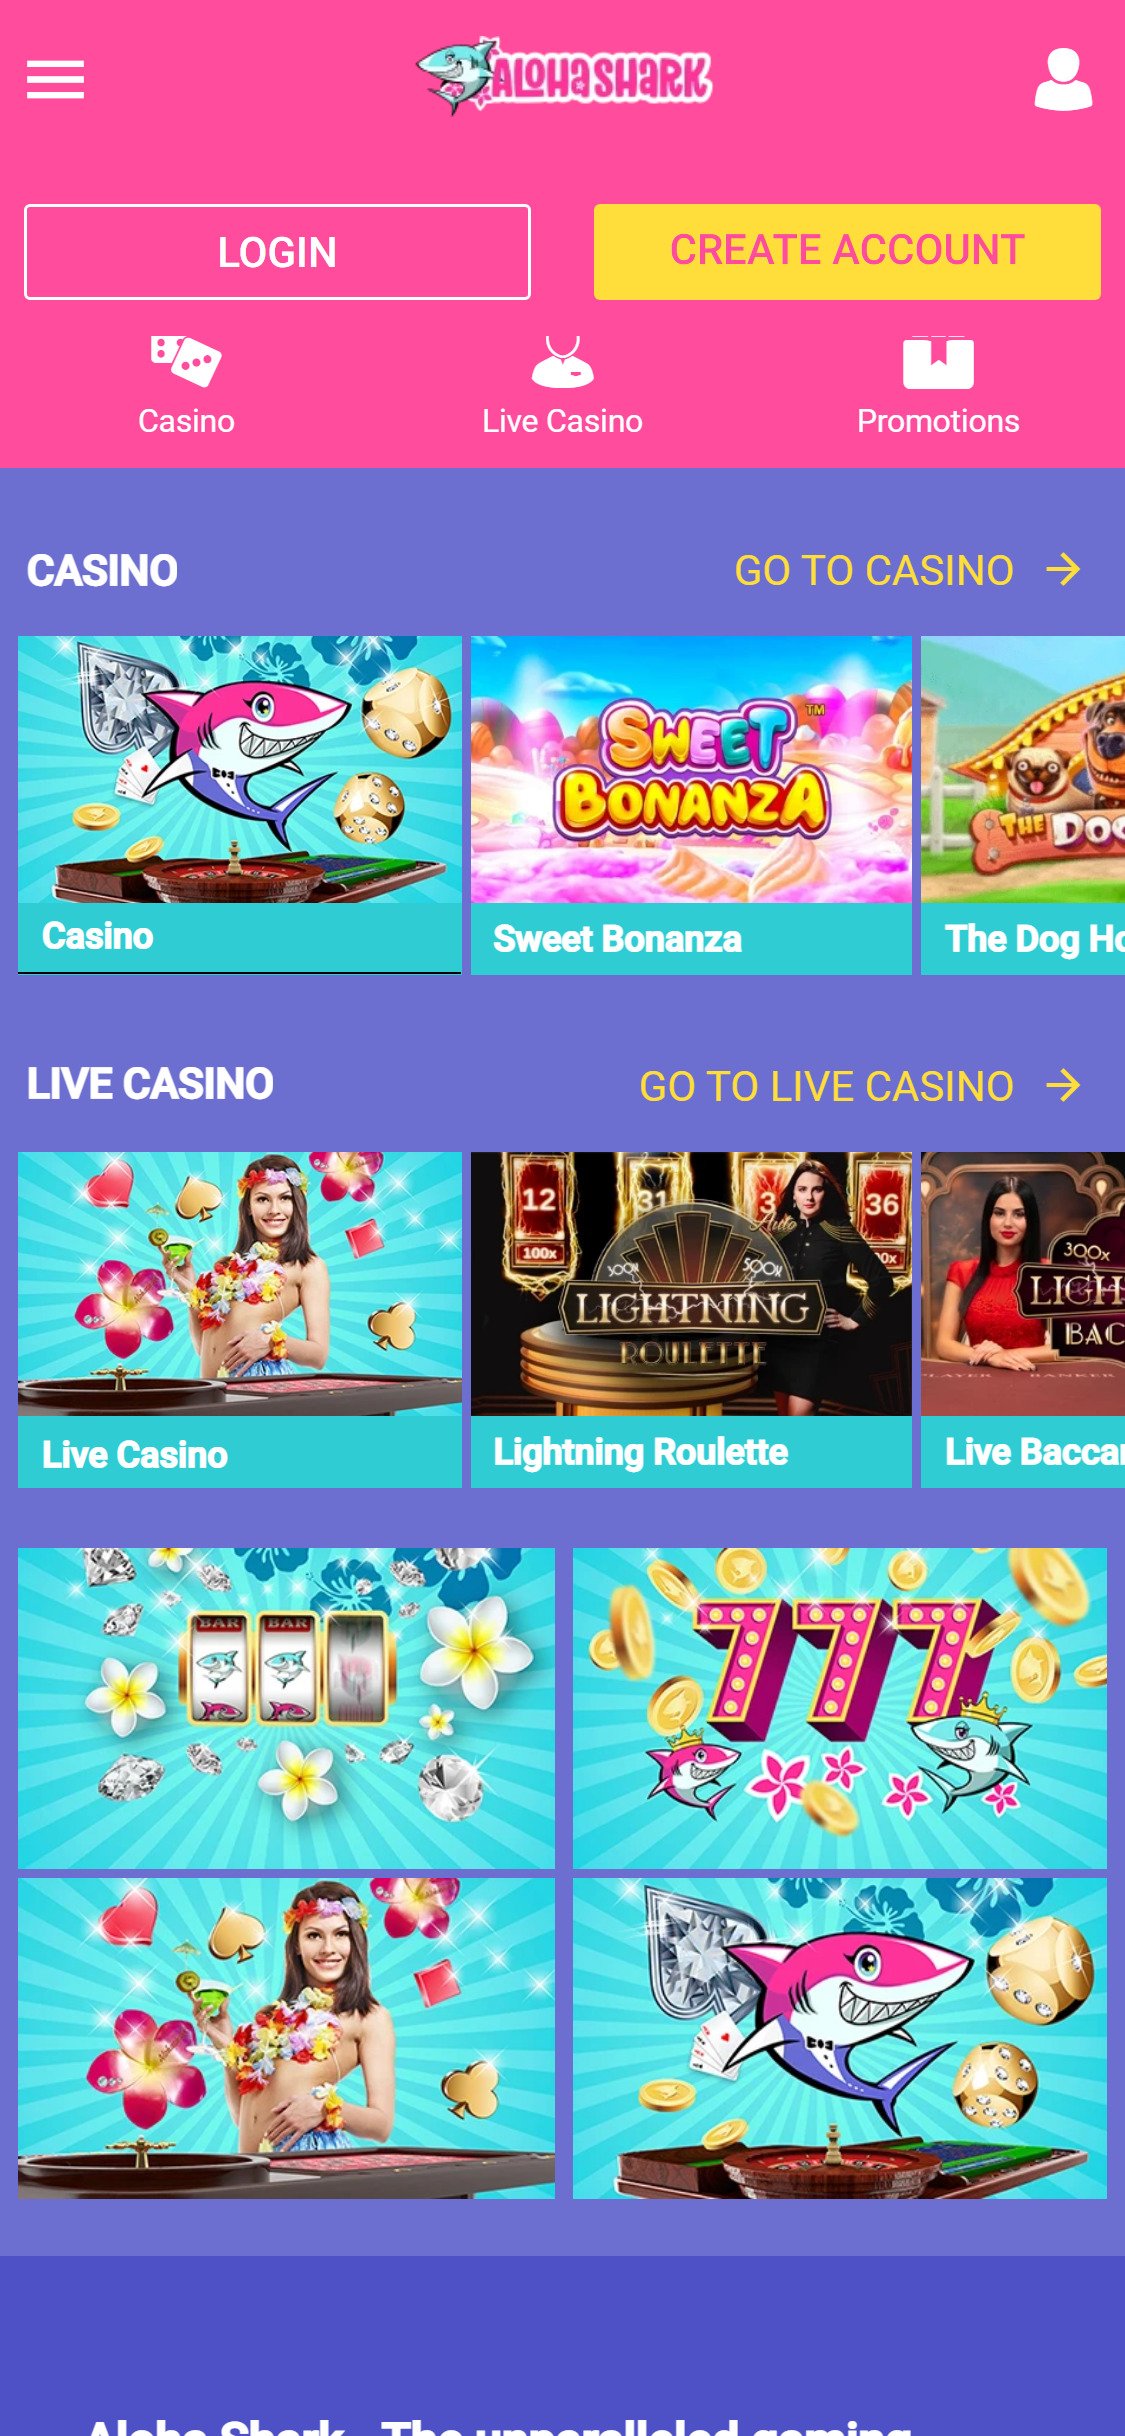 Aloha Shark Casino Mobile Games Review